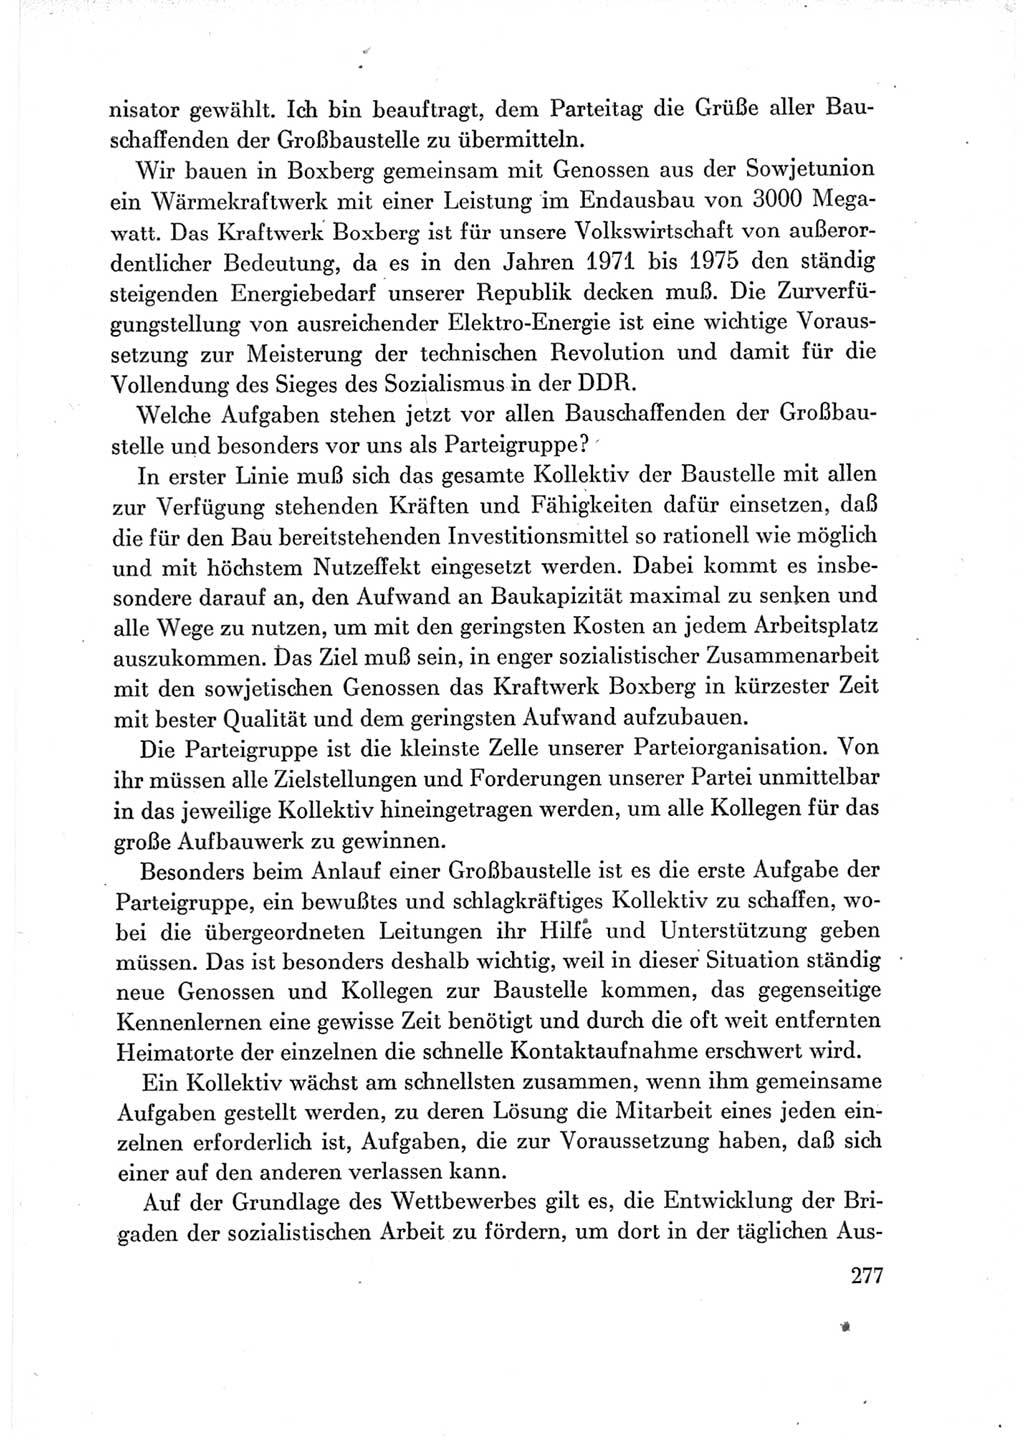 Protokoll der Verhandlungen des Ⅶ. Parteitages der Sozialistischen Einheitspartei Deutschlands (SED) [Deutsche Demokratische Republik (DDR)] 1967, Band Ⅲ, Seite 277 (Prot. Verh. Ⅶ. PT SED DDR 1967, Bd. Ⅲ, S. 277)